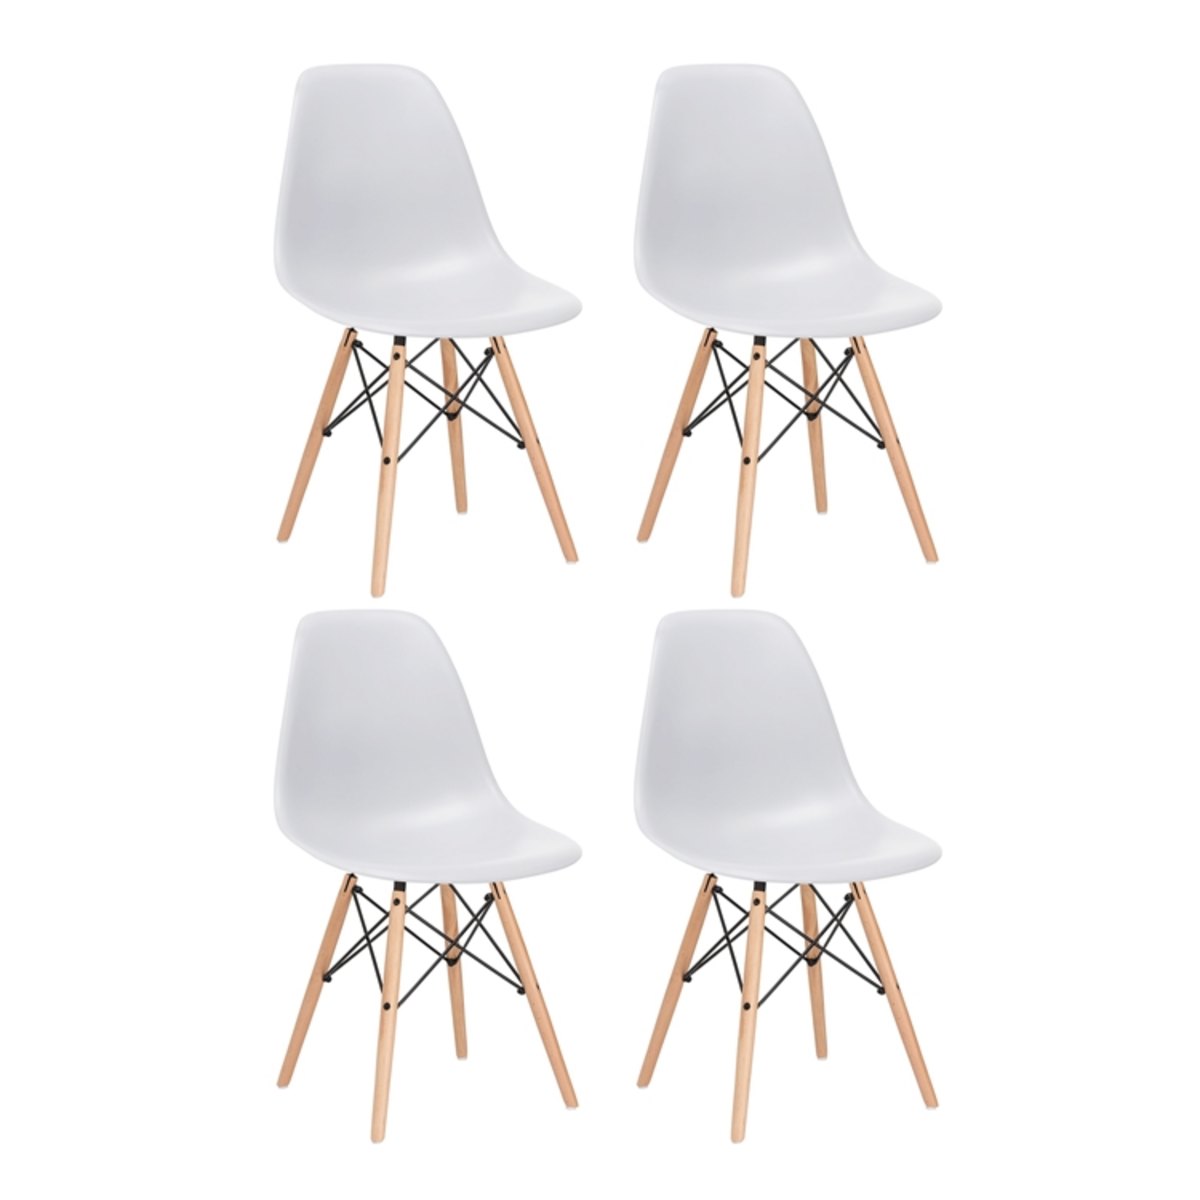 KIT - 4 x cadeiras Eames DSW - Madeira clara - Cinza claro